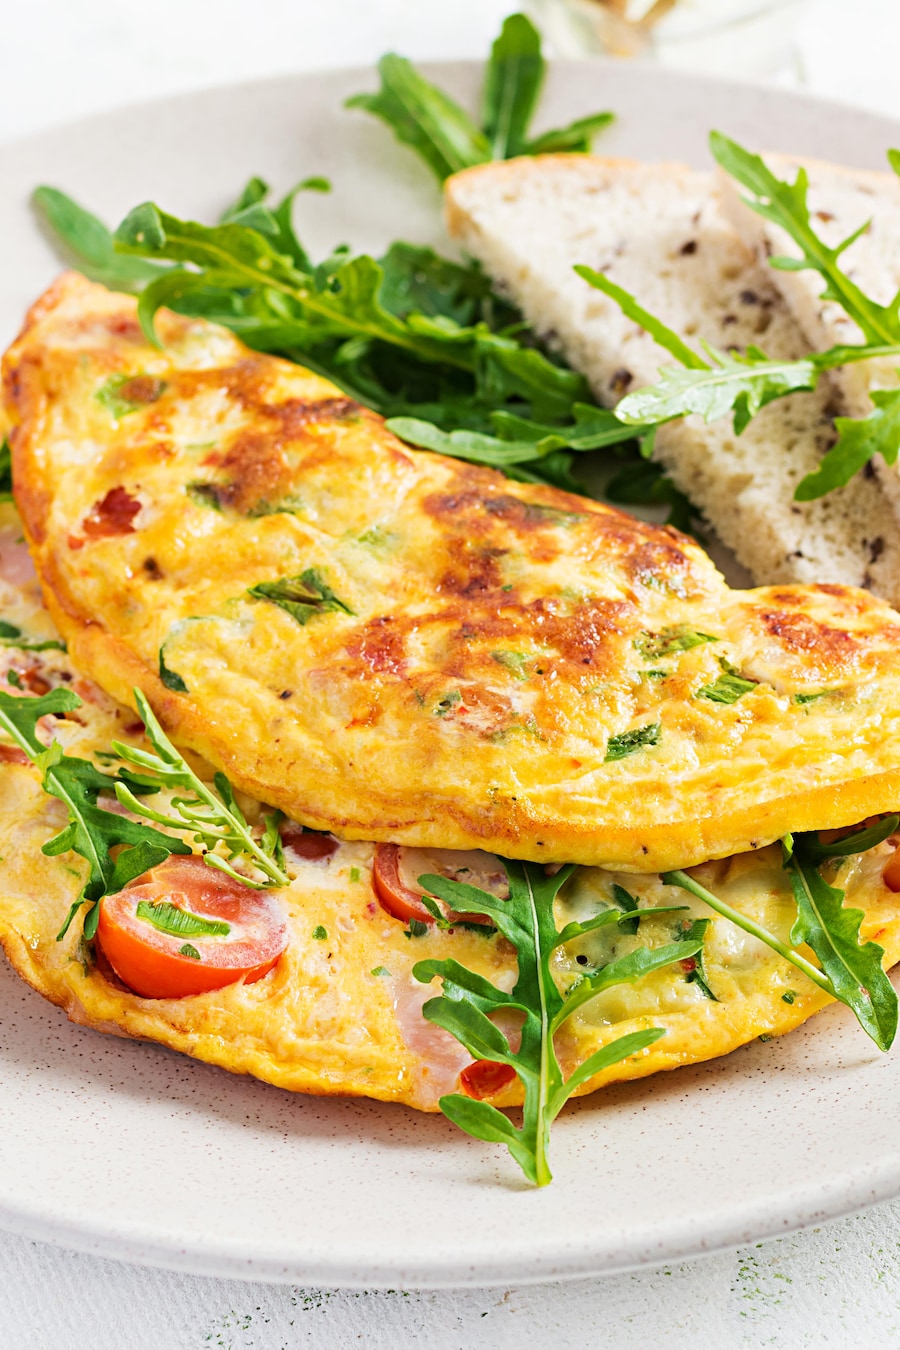 Dans une assiette, il y a une omelette contenant du jambon, des tomates cerises, du fromage ainsi que de la roquette.